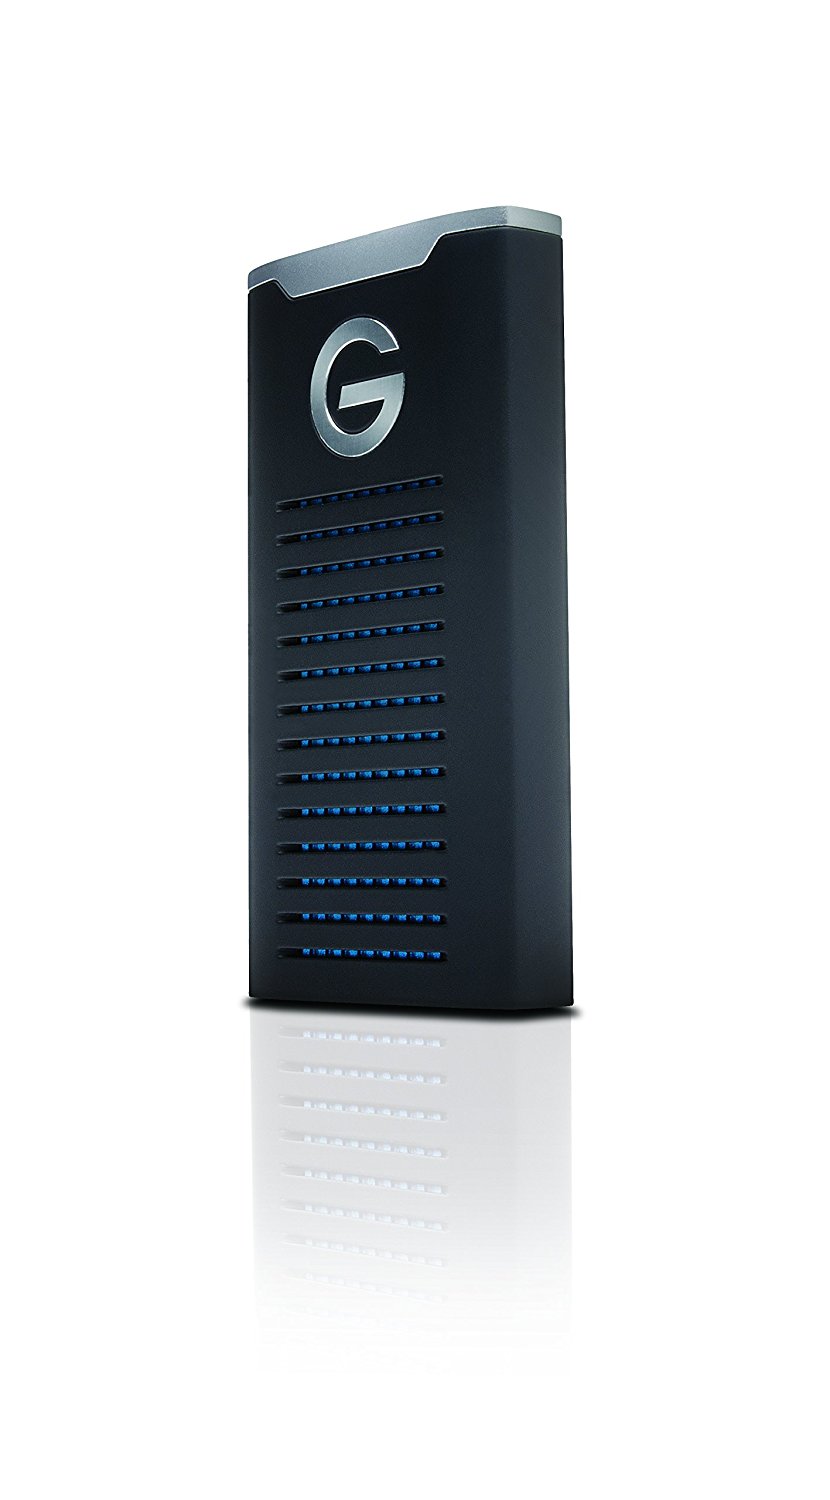 G-Technology Disque SSD mobile G-Drive série R de 1 To - Connectivité USB-C (USB 3.1 Gen 2) - 0G06053